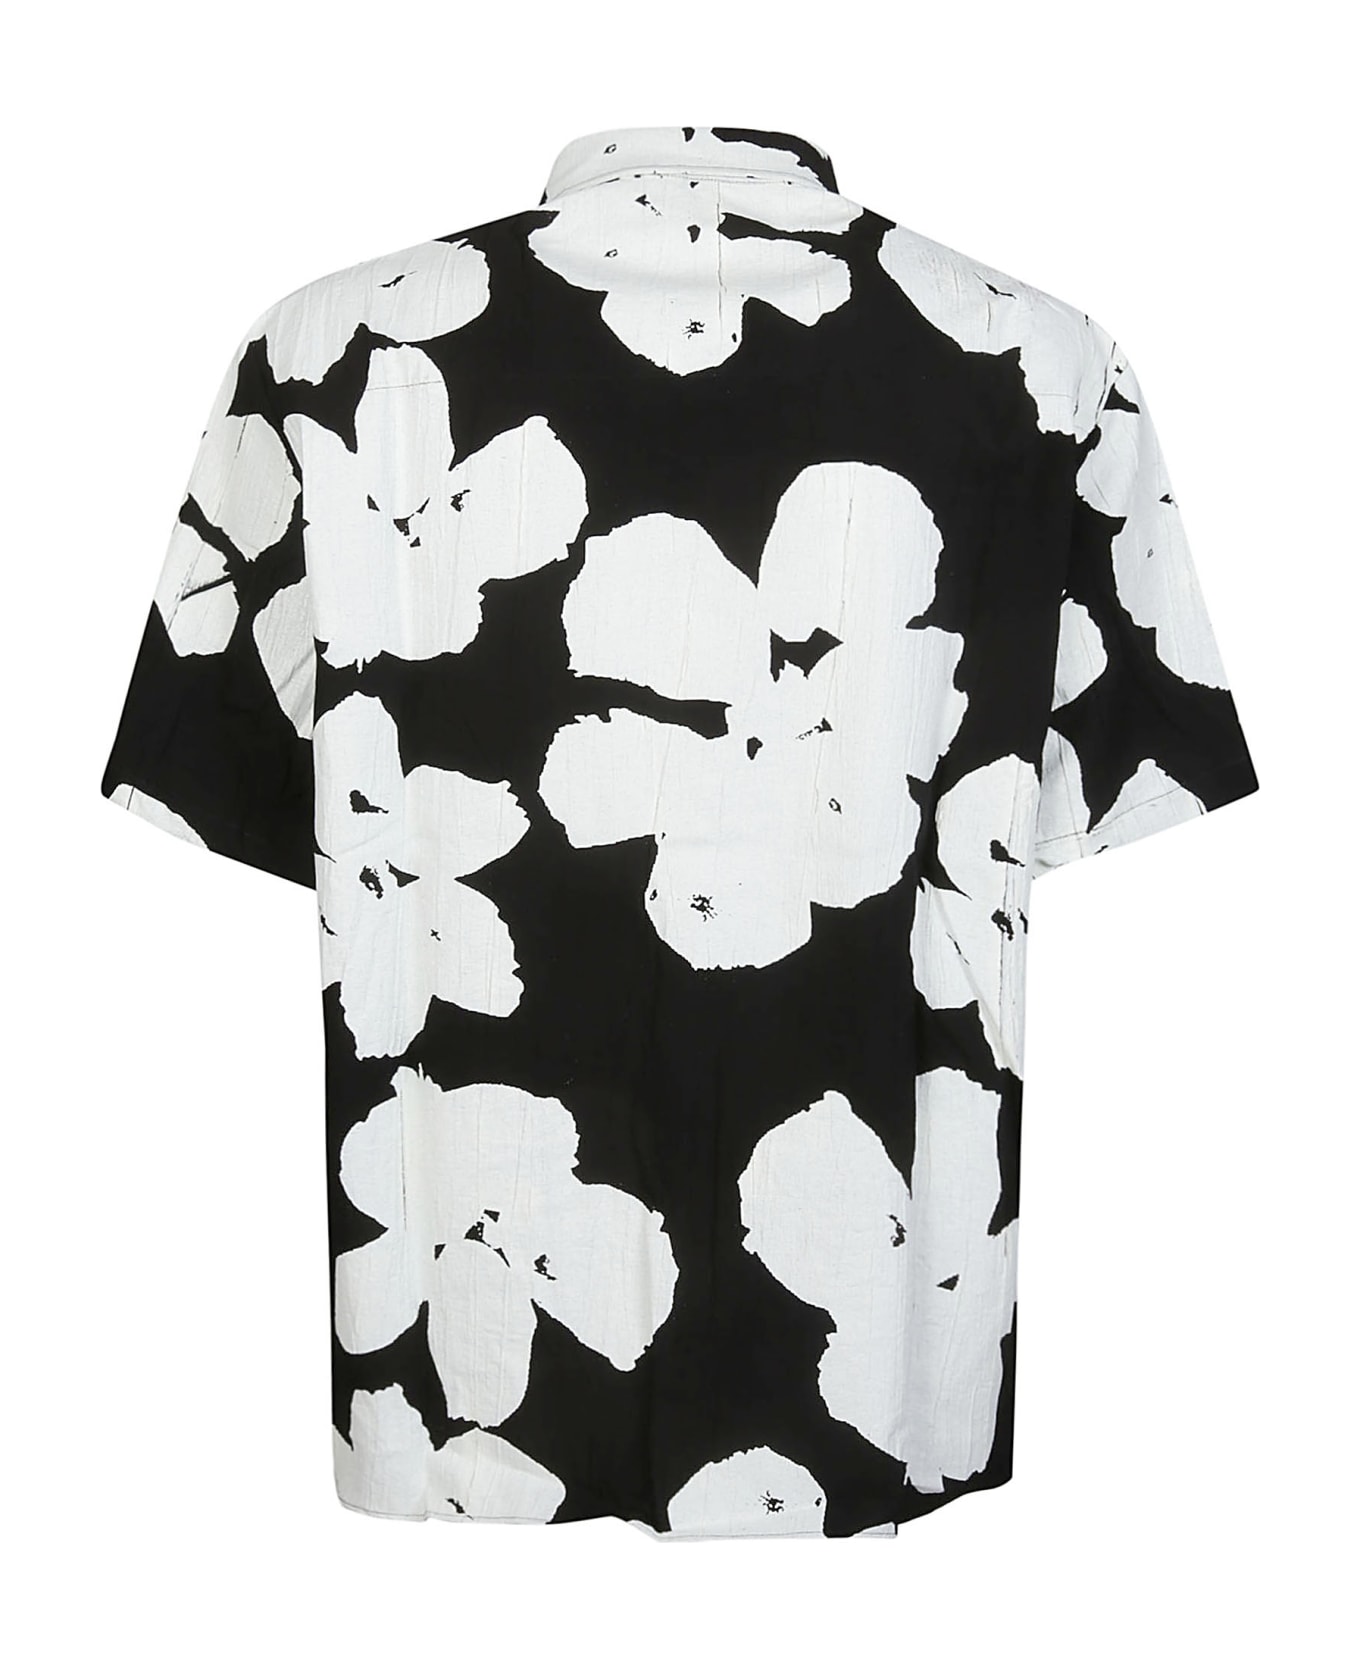 Family First Milano Short Sleeve Flower Shirt - Black シャツ